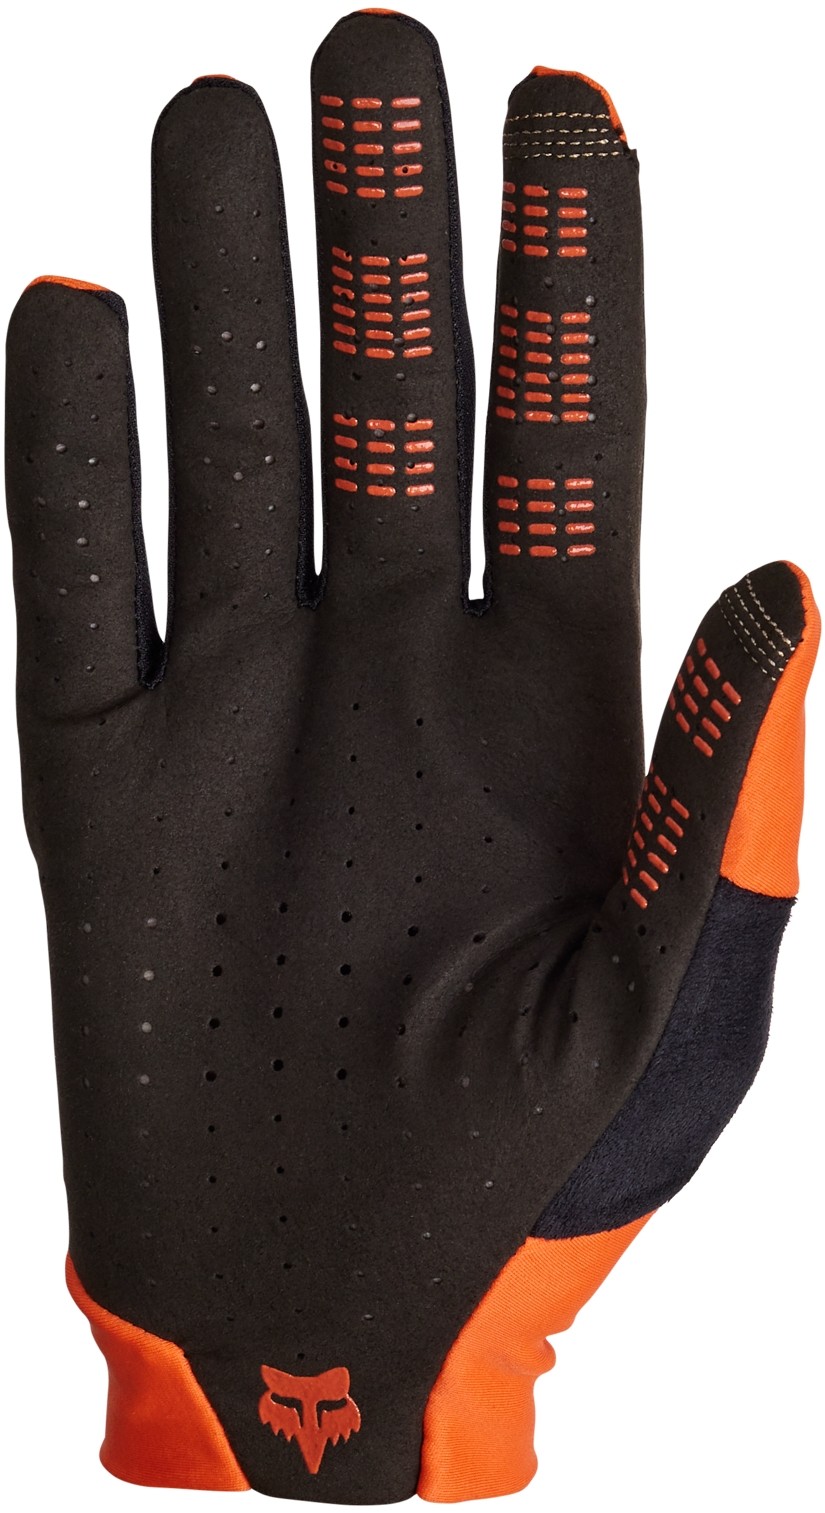 Flexair Long Finger MTB Gloves image 1